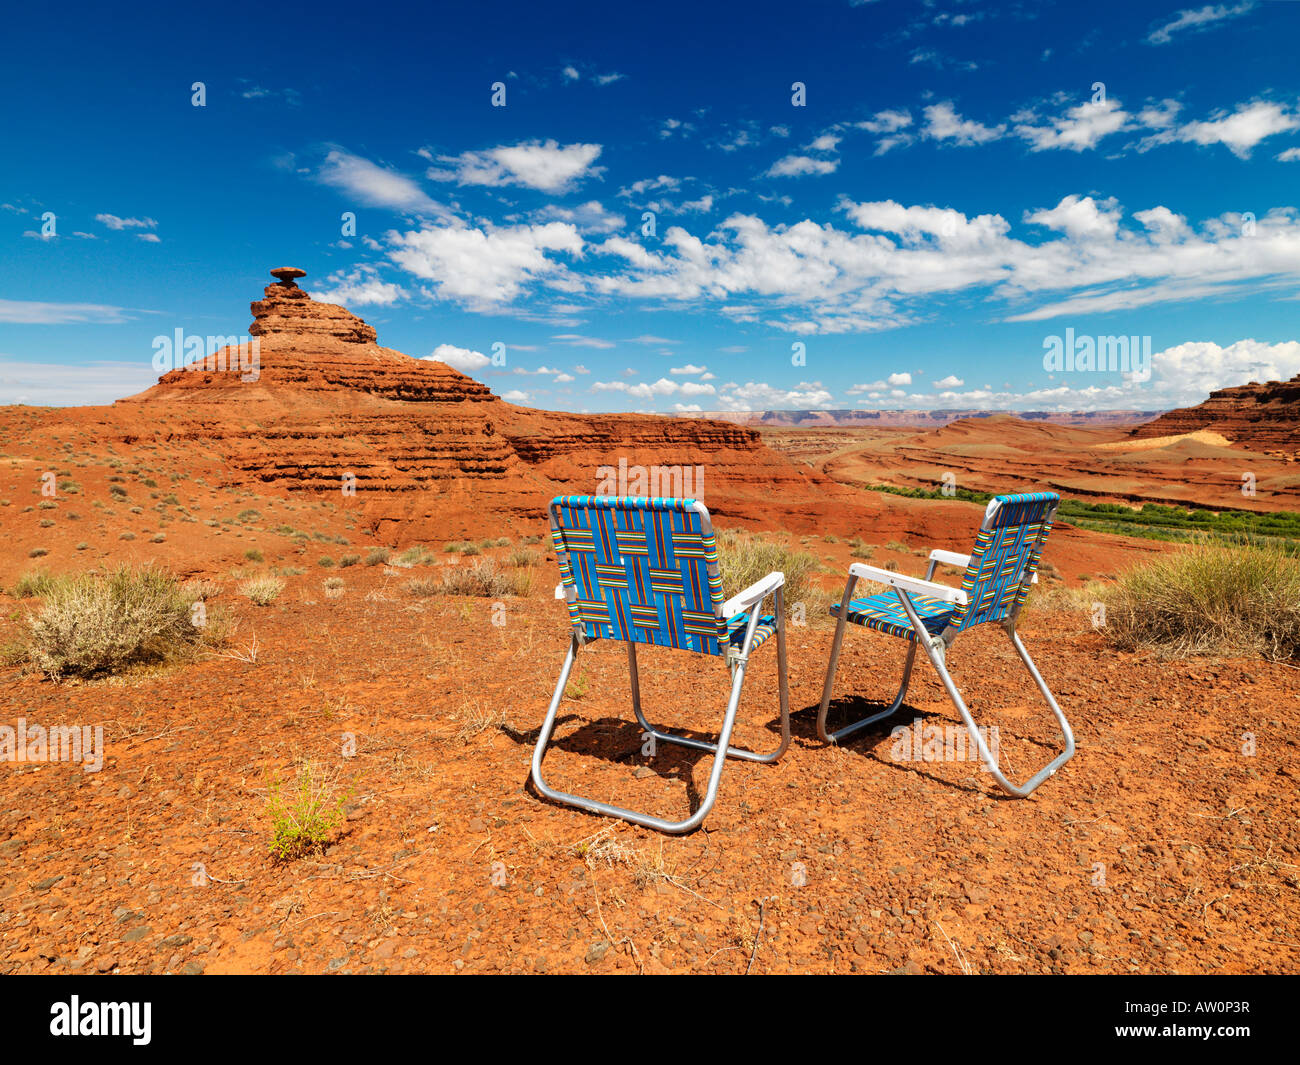 Chairs in desert. Stock Photo